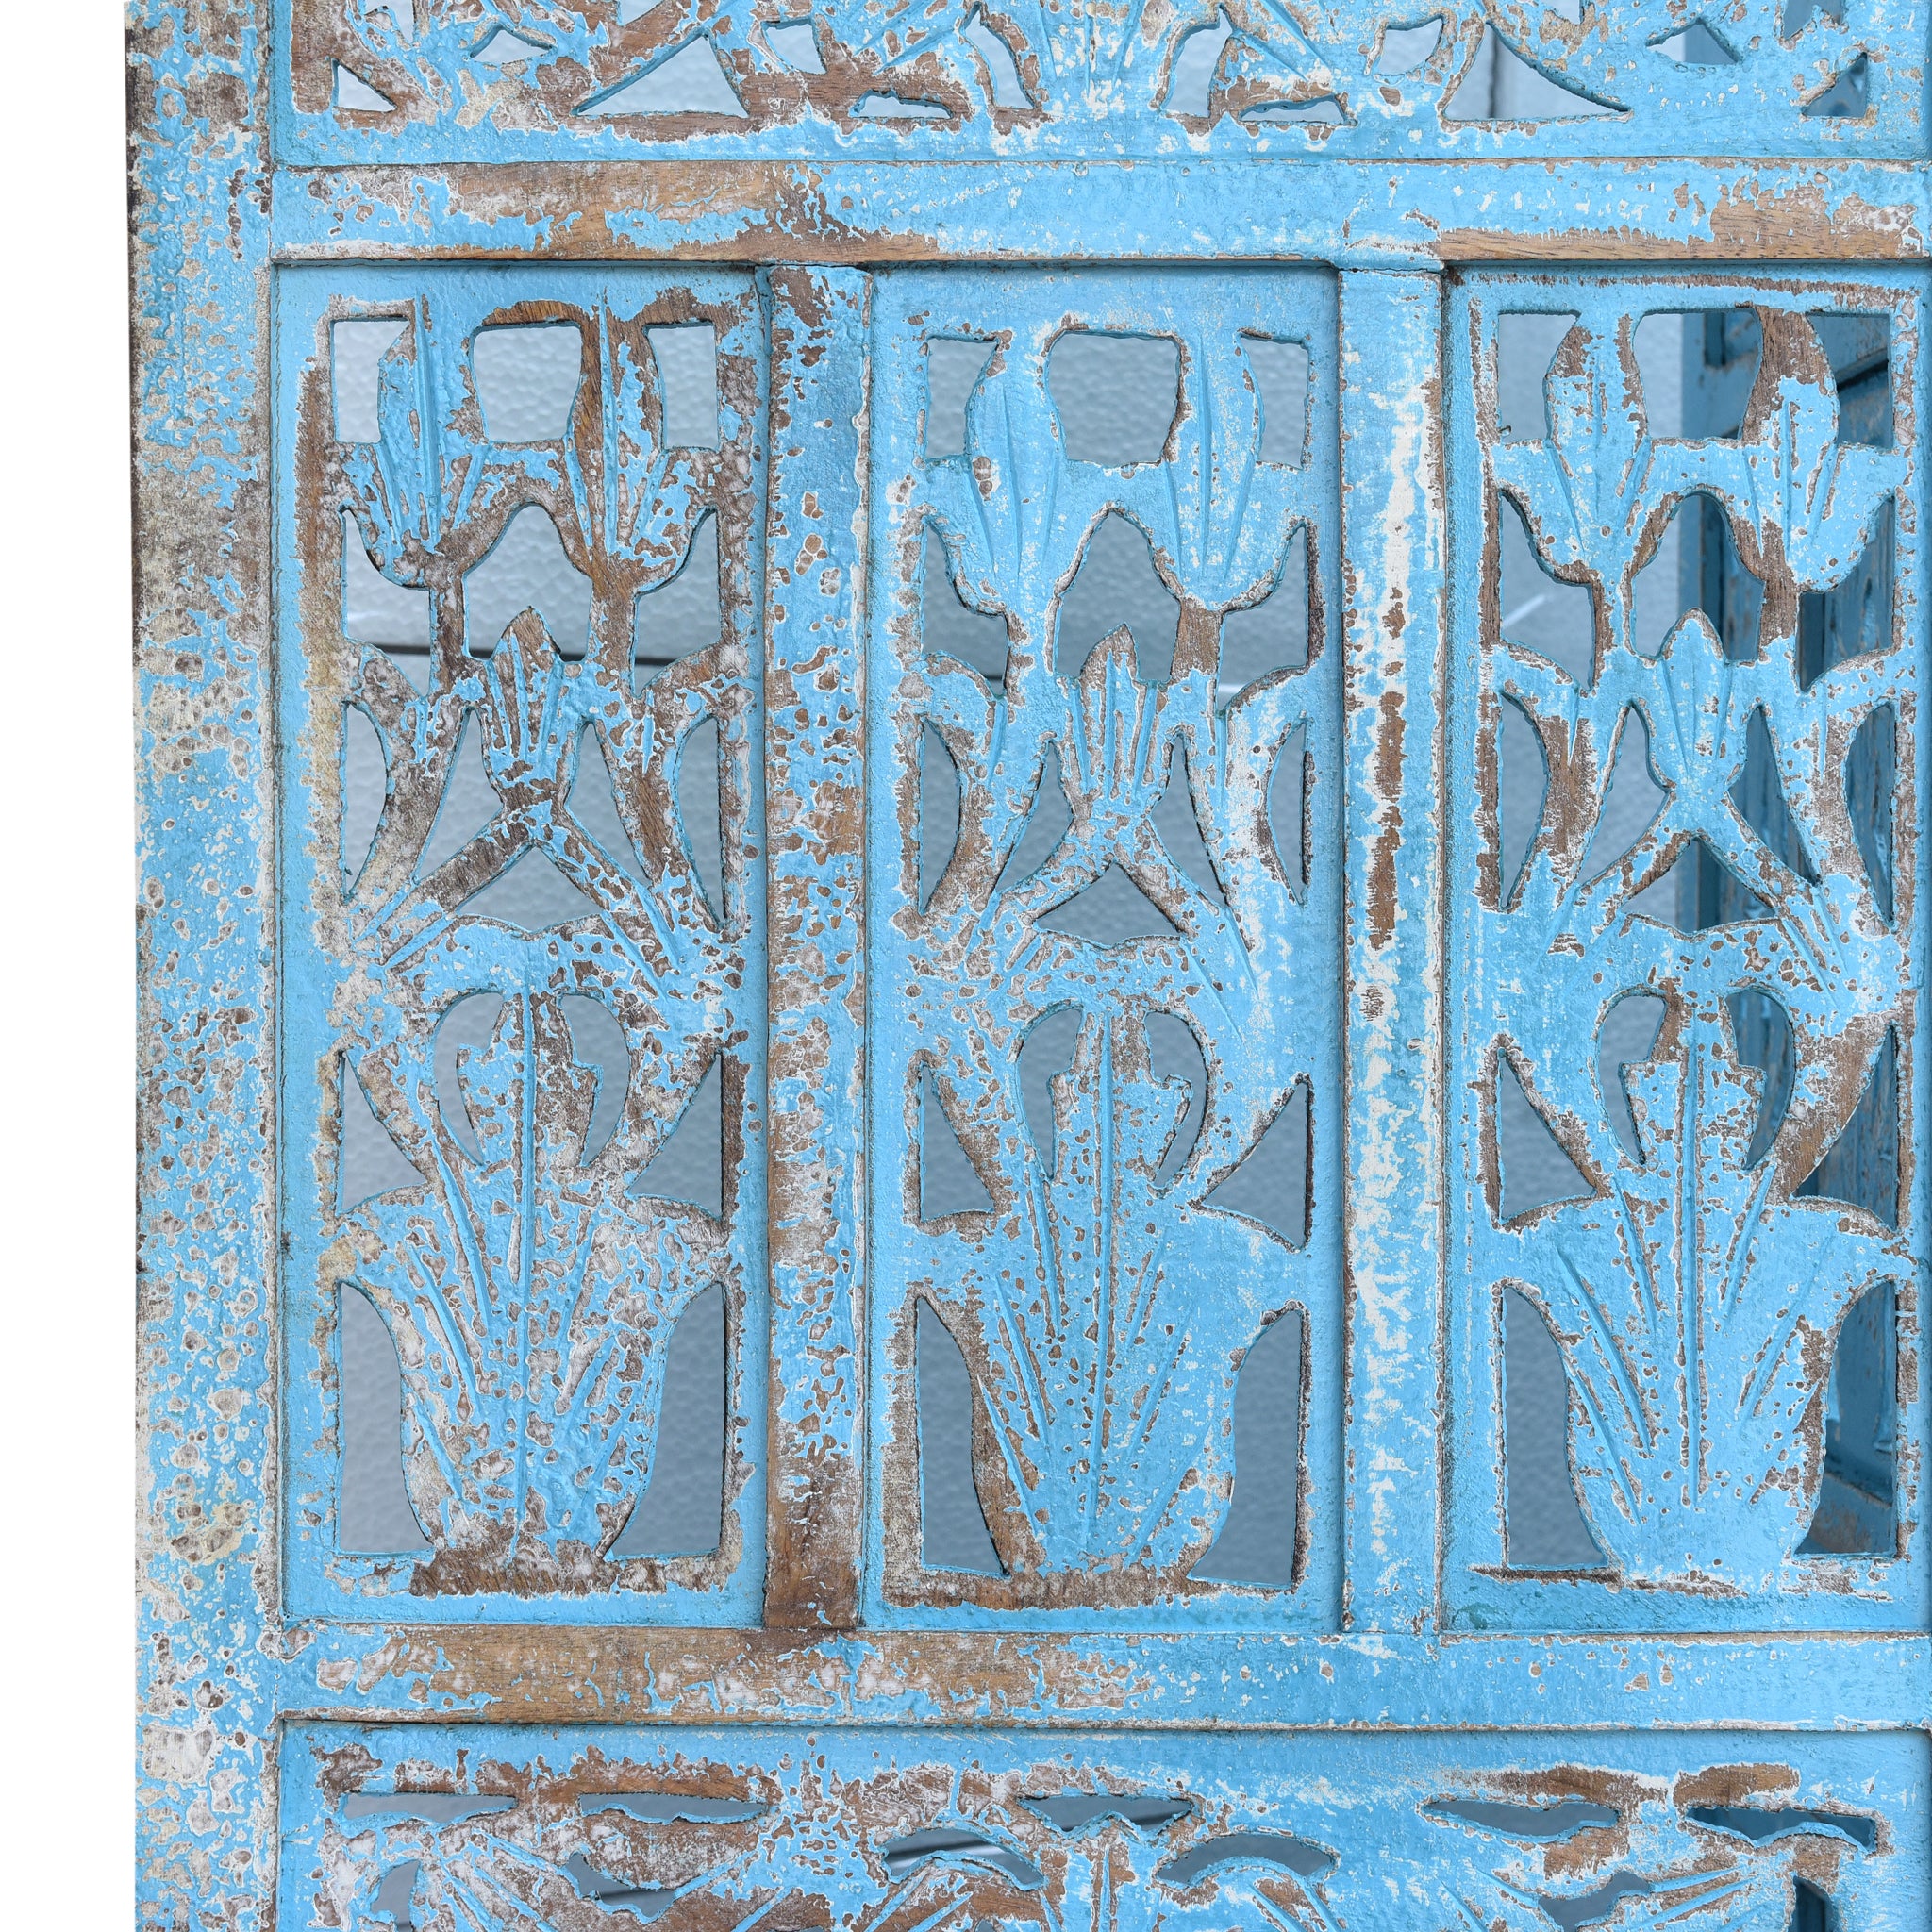 Jali Screen Room Divider Blue close up of carved details